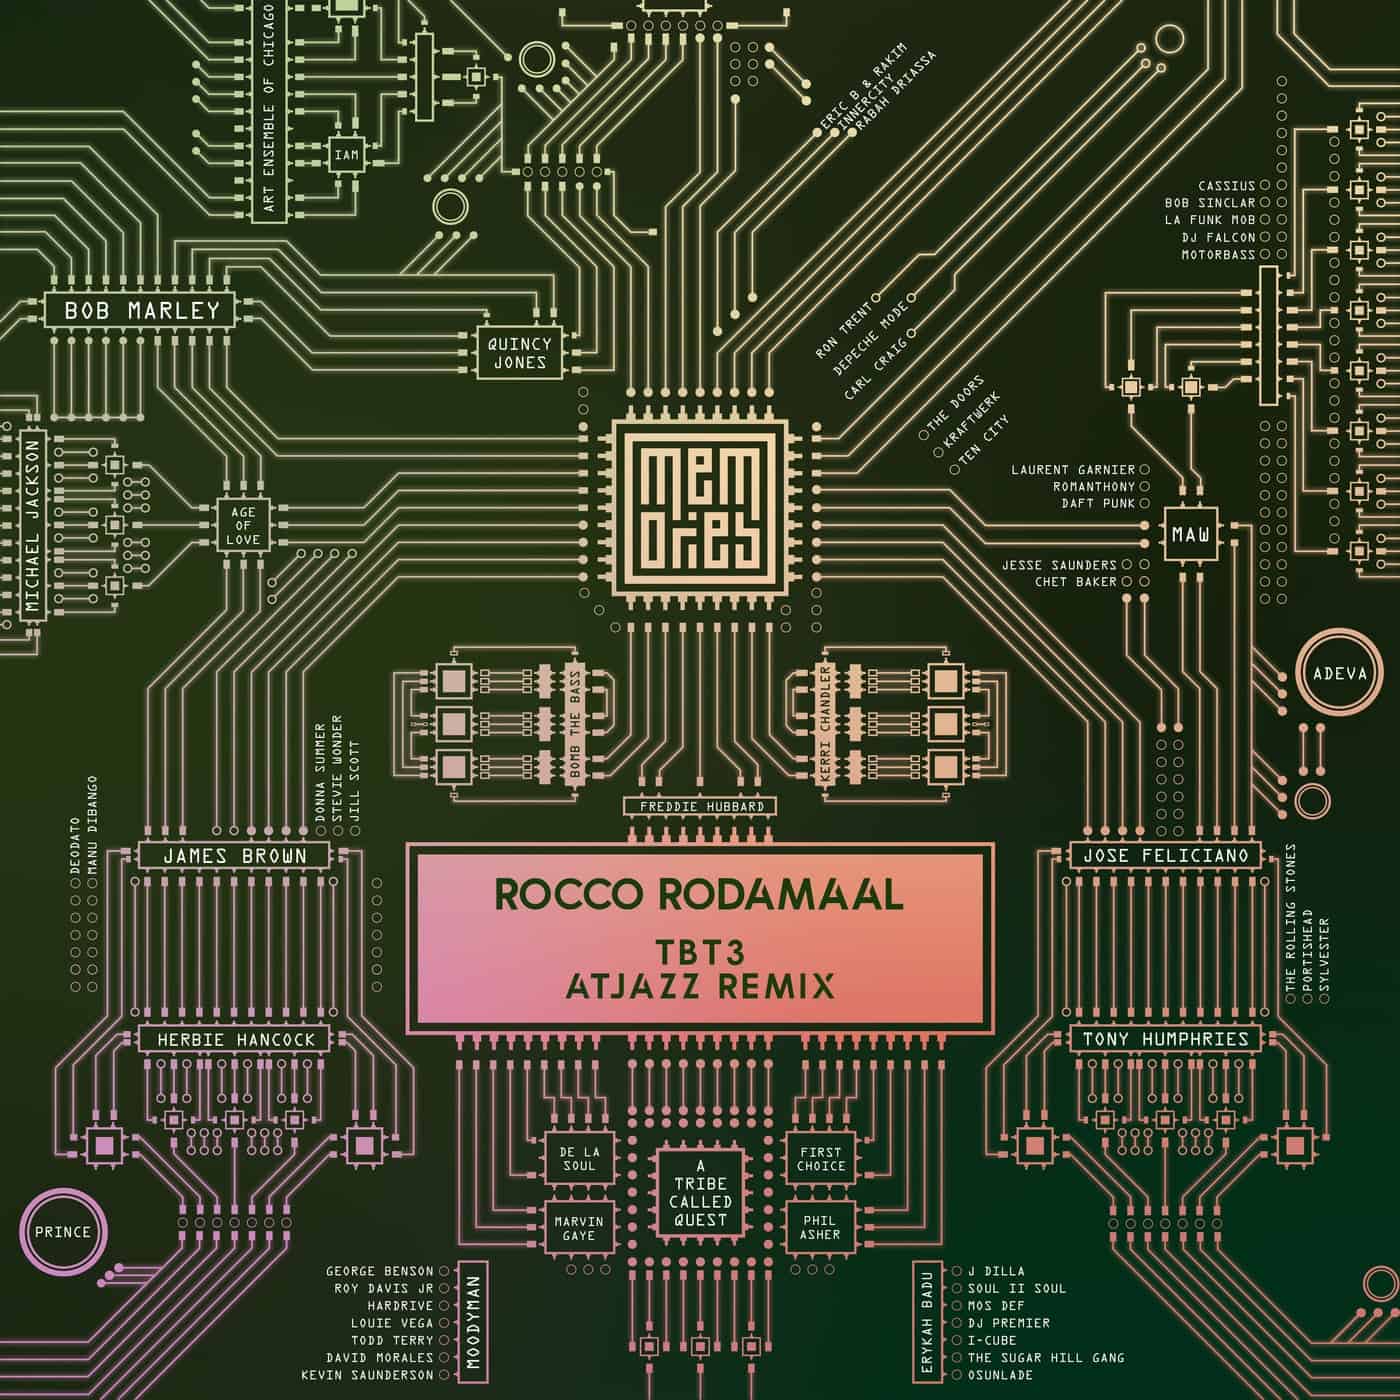 image cover: Rocco Rodamaal - Tbt3 (Atjazz Remix) / MEM014